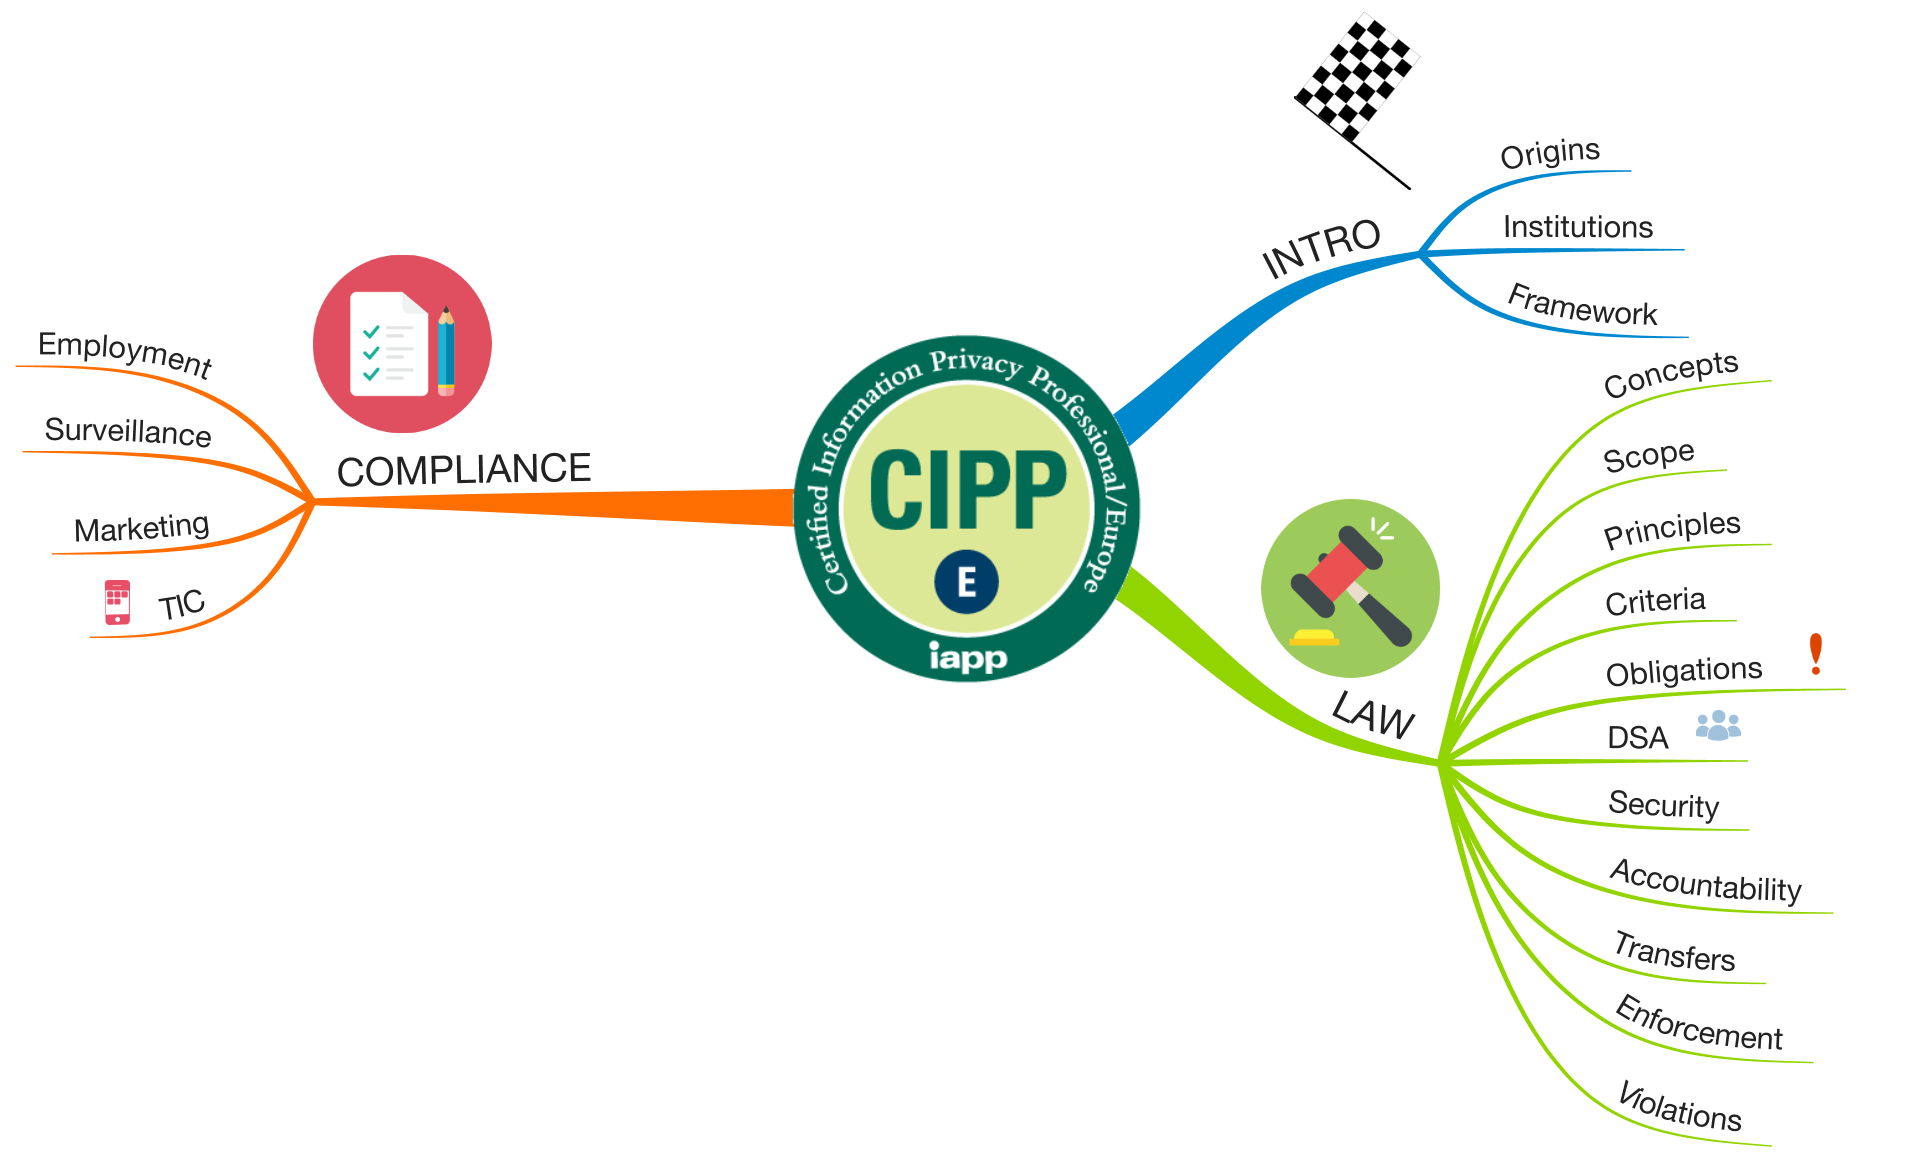 CIPP/E BoK mindmap